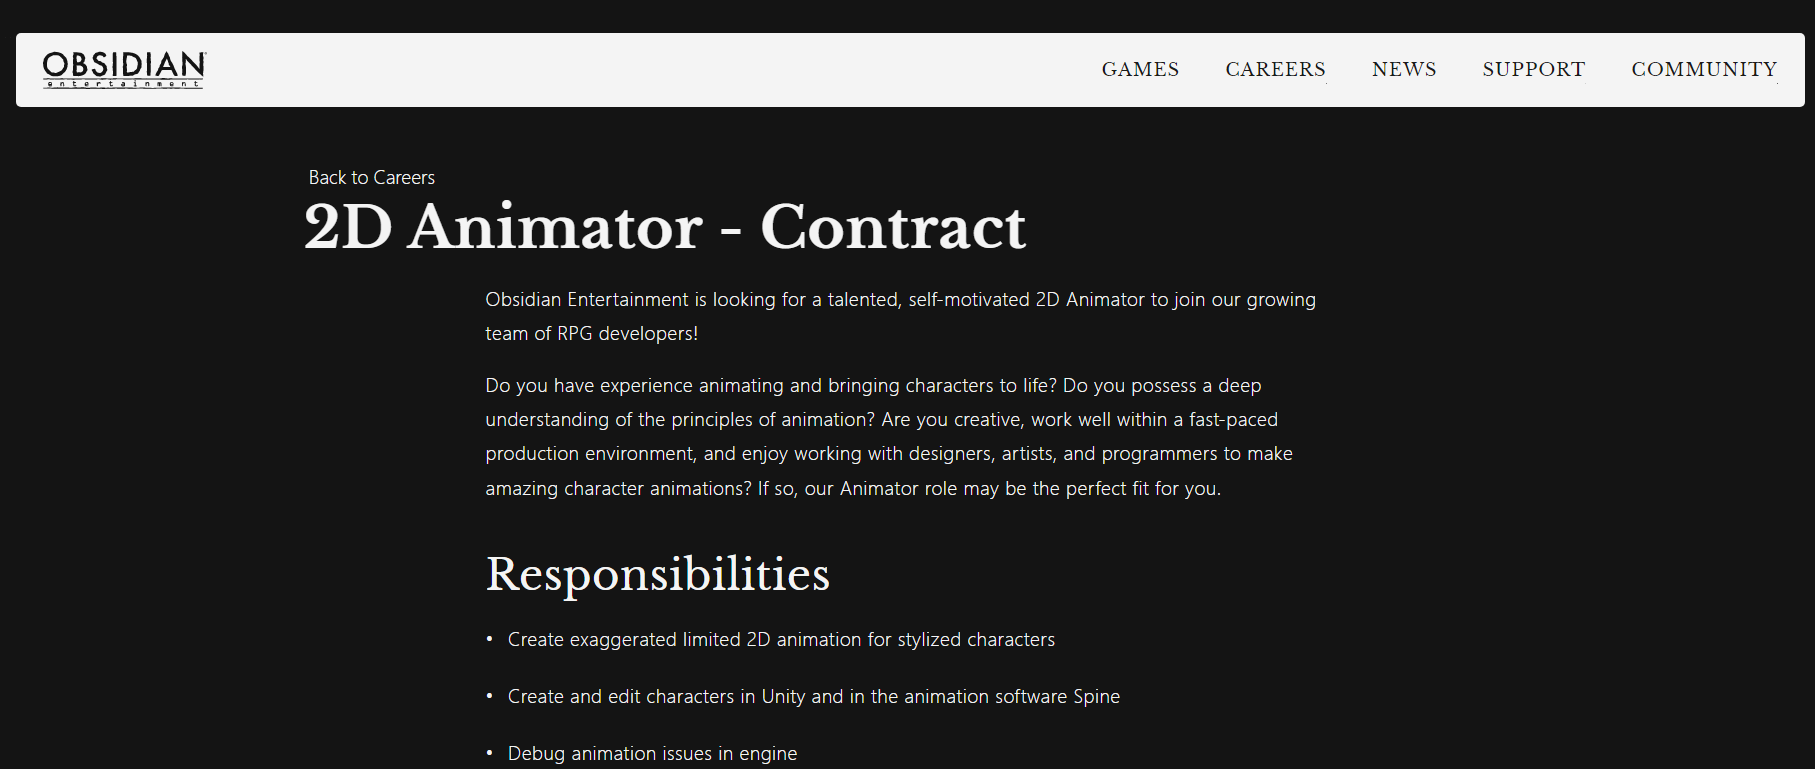 黑曜石发布2D动画师招聘公告 或开发类《极乐迪斯科》RPG 